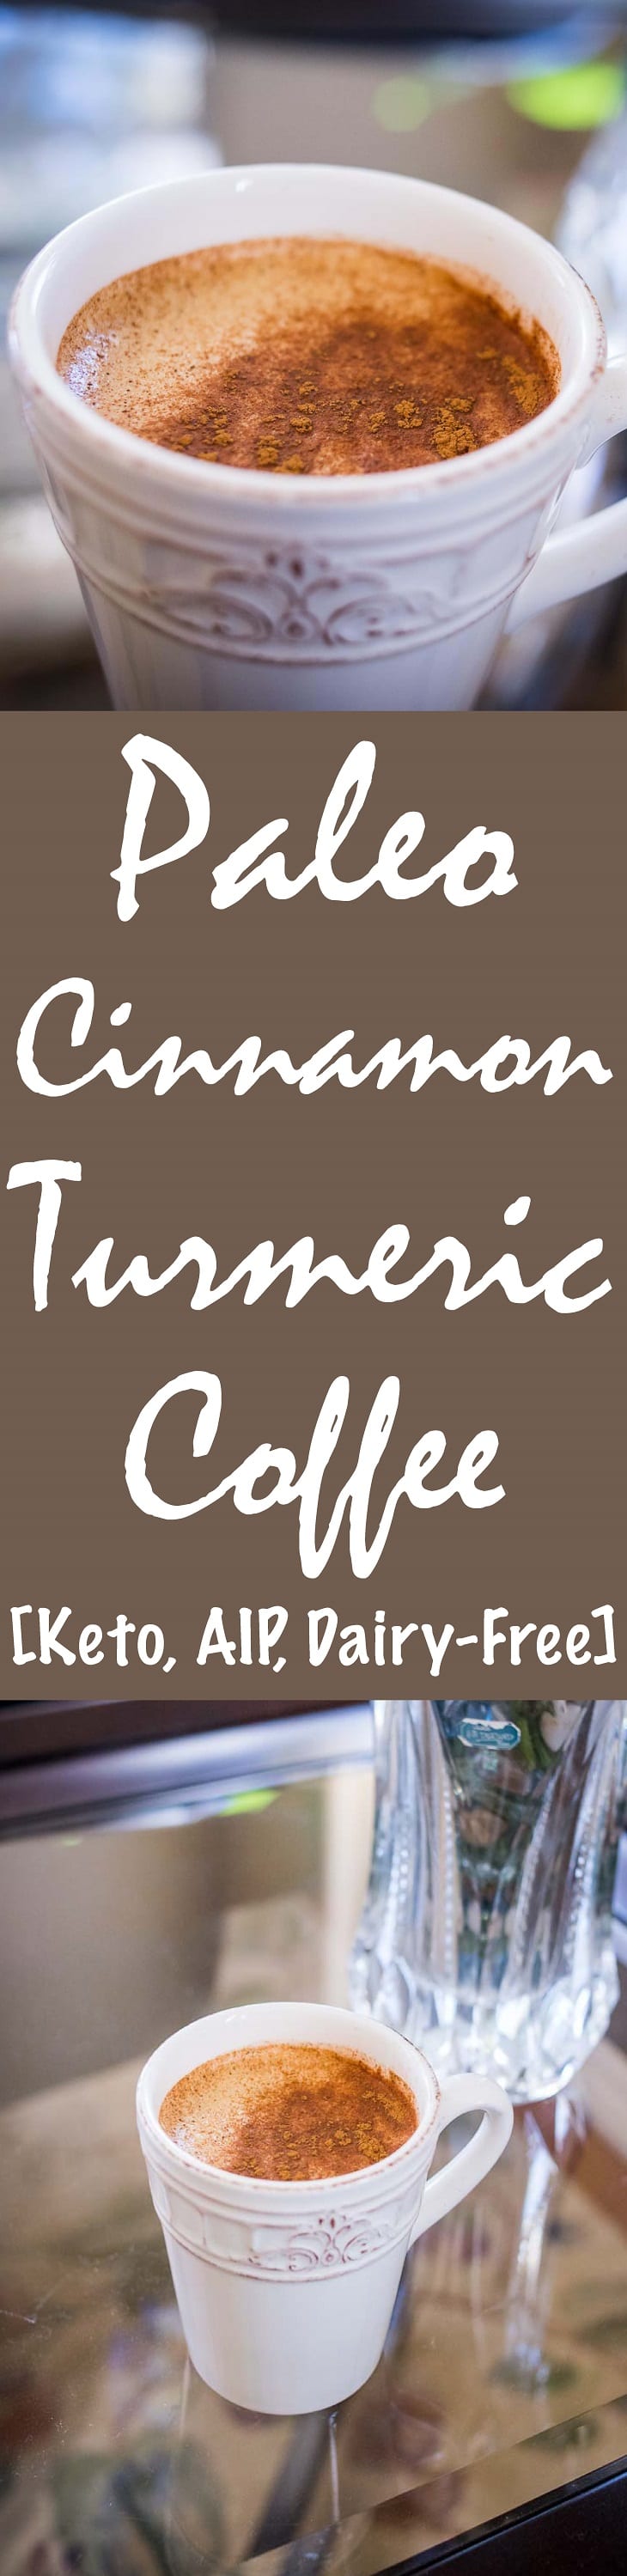 Paleo Cinnamon Turmeric Coffee Recipe [Keto, AIP, Dairy-Free] #paleo #recipe http://paleoflourish.com/paleo-cinnamon-turmeric-coffee-recipe